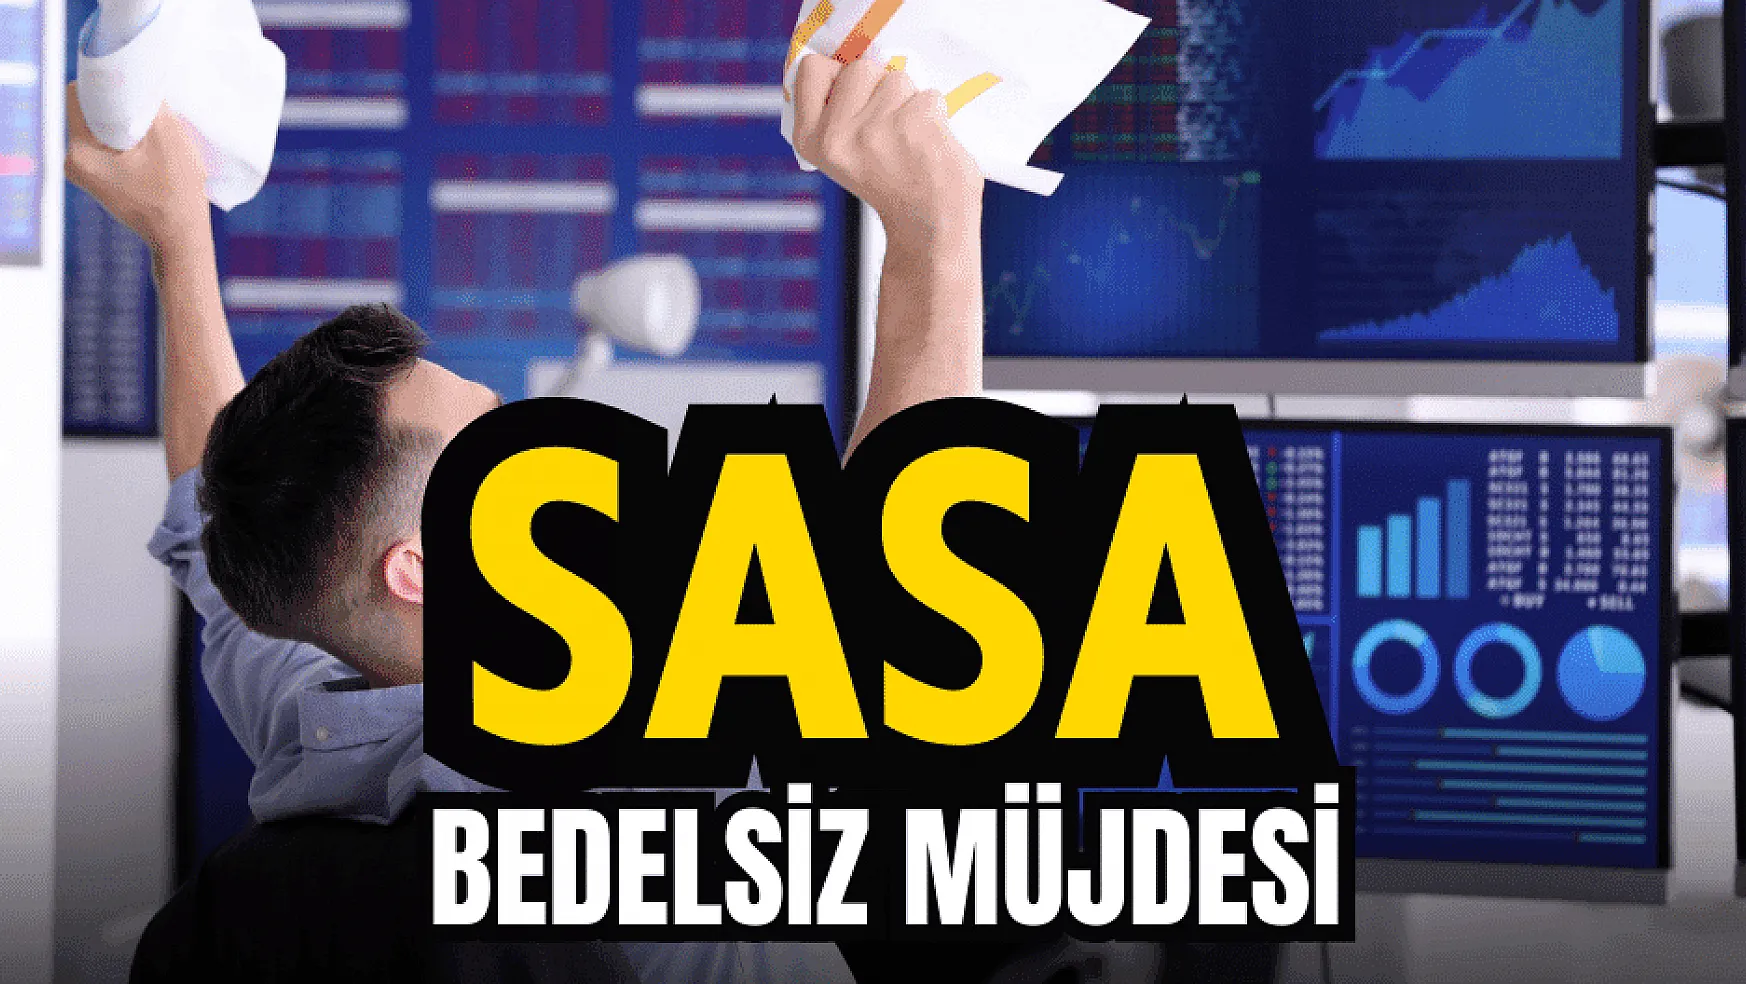 SASA yatırımcılarına bedelsiz müjdesi!